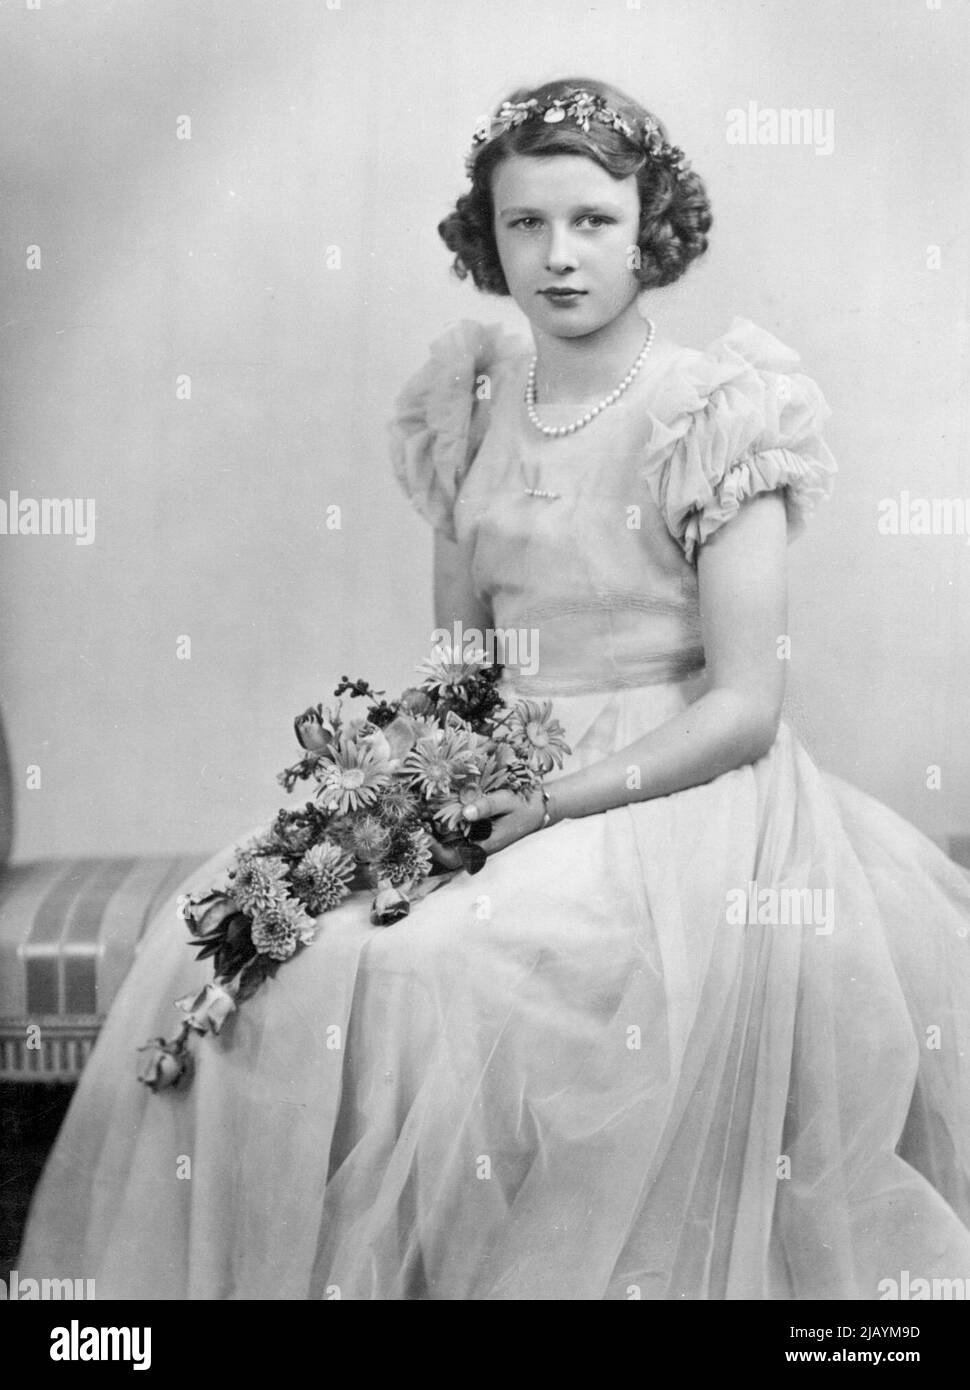 Un nuovo ritratto di:- principessa Alexandra -- figlia di S.R.H. il duca ritardato di Kent e di S.R.H. la duchessa di Kent. La Principessa Alexandra è nata il 25th dicembre 1936. Dicembre 20, 1946. (Foto di Harris's Picture Agency) Foto Stock